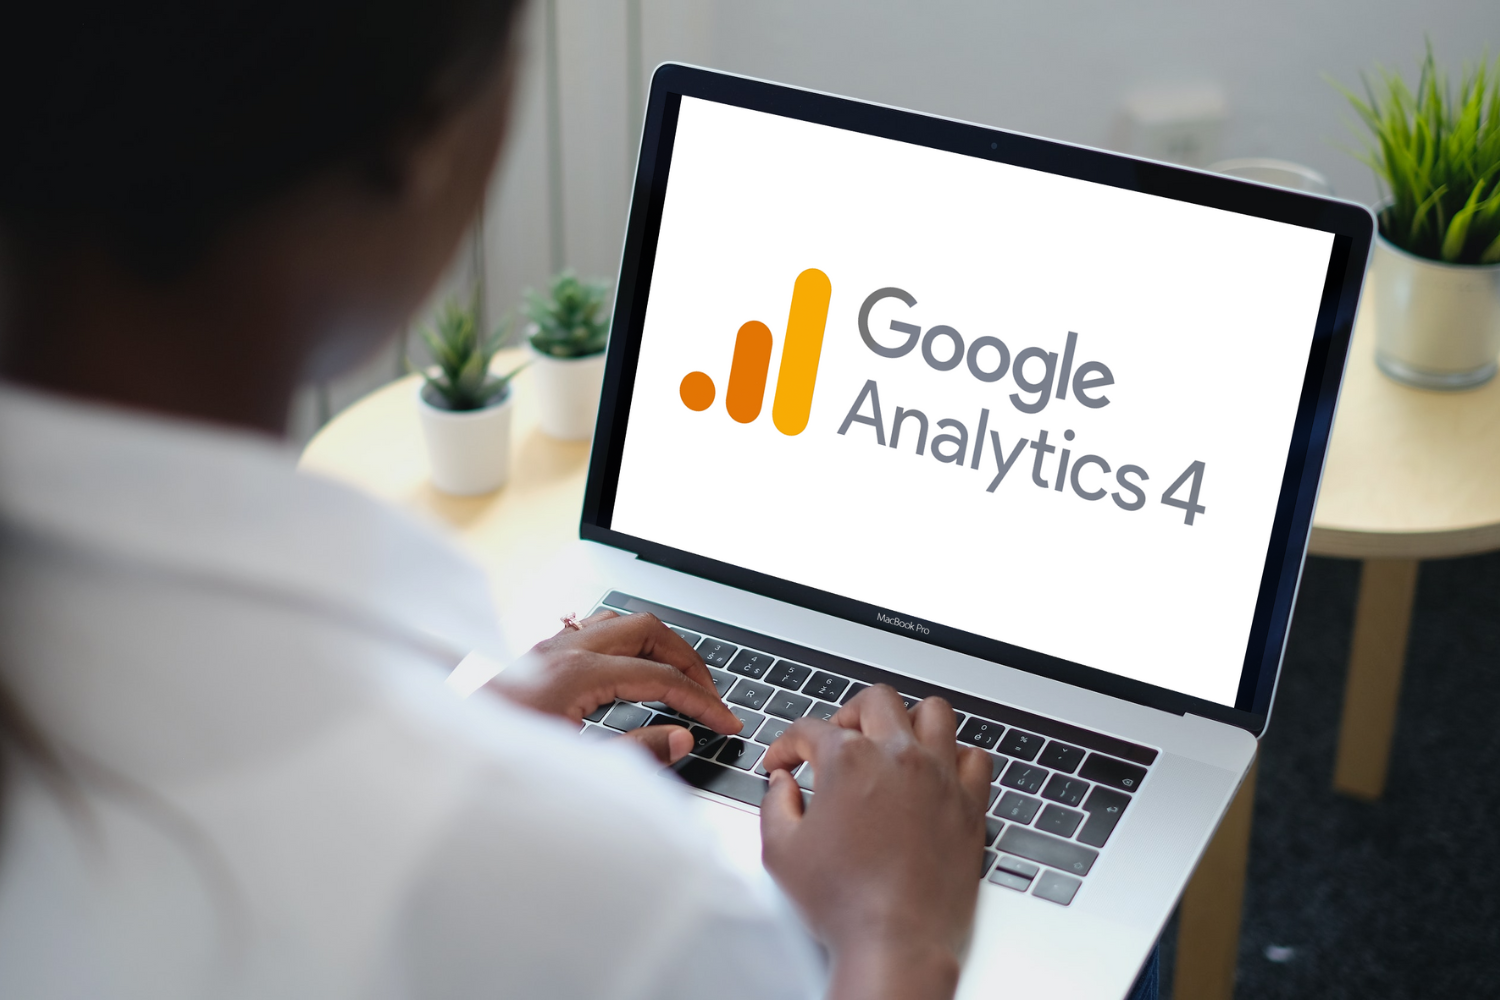 Switching to Google Analytics 4